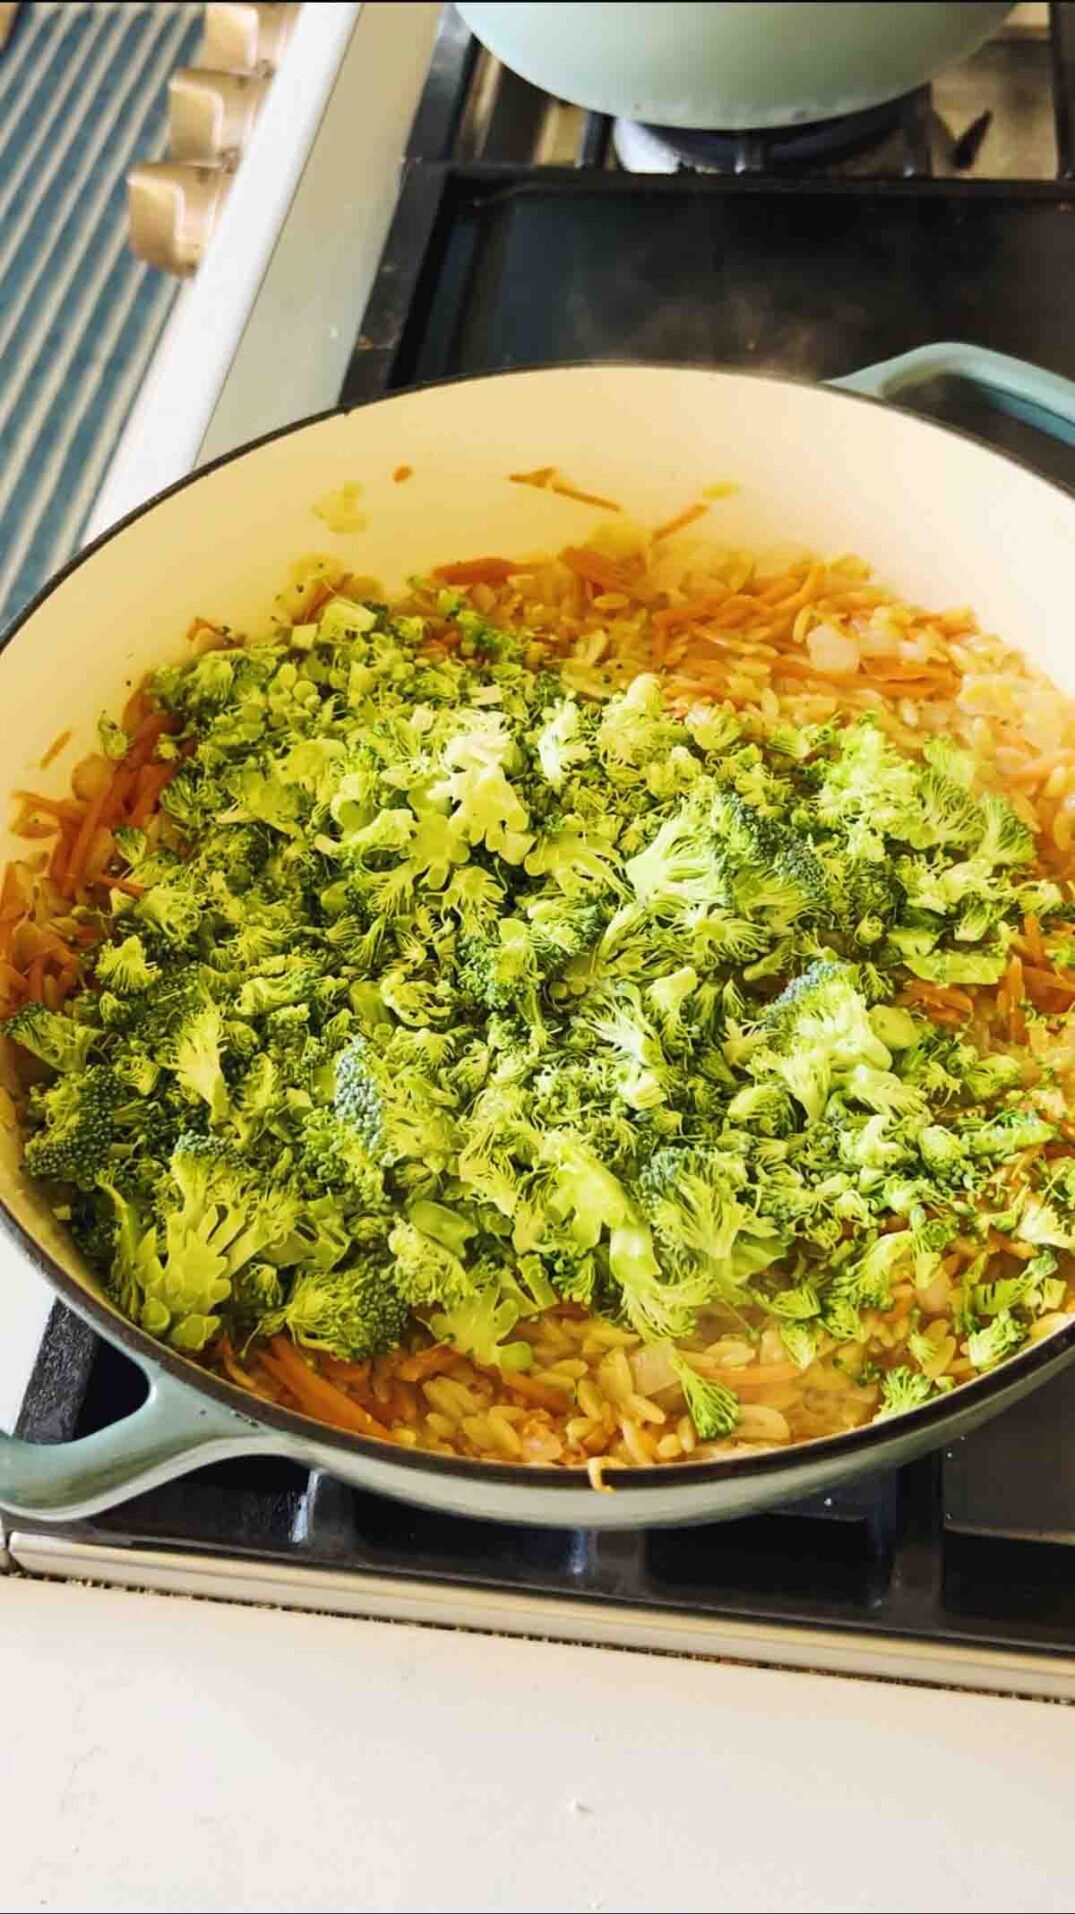 fresh broccoli in a blue braising dish.